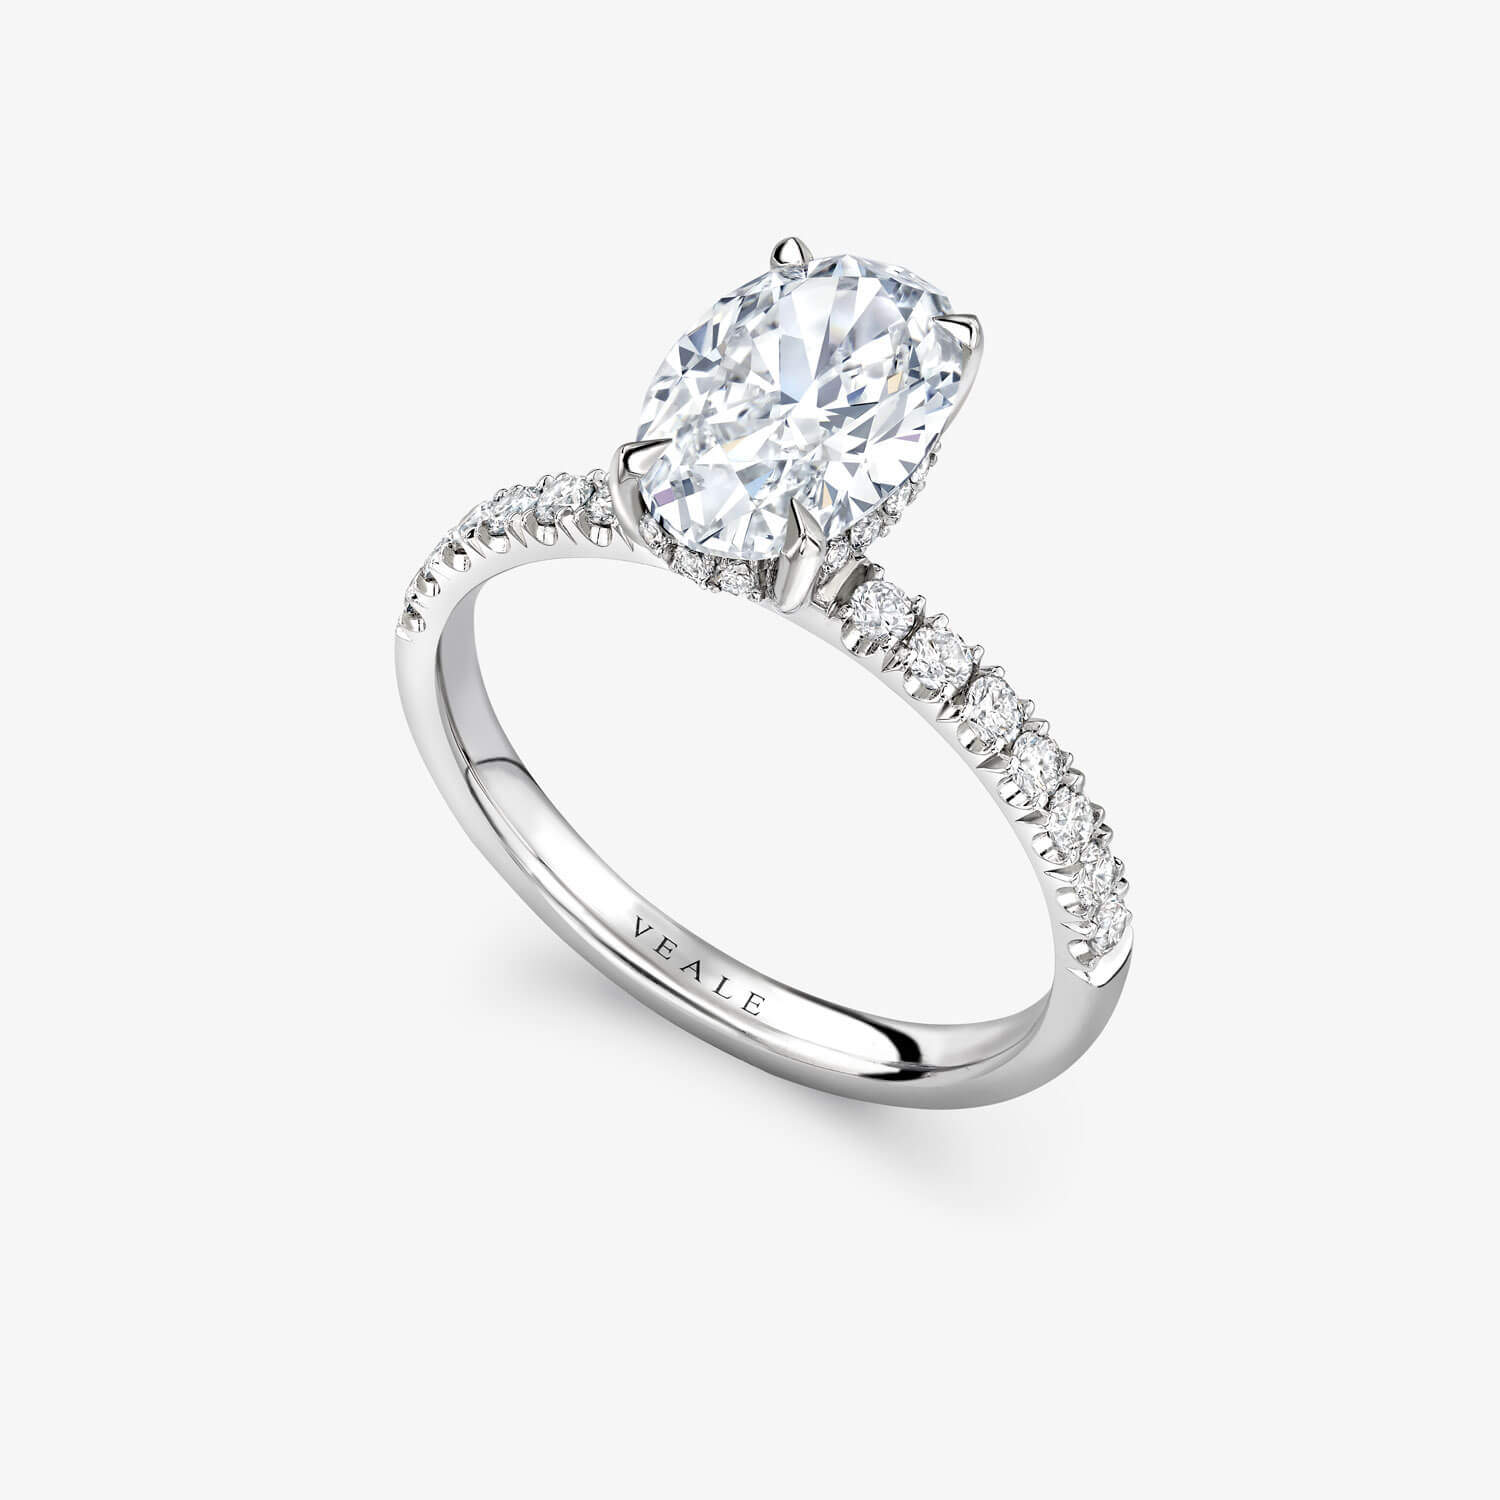 Tom’s Bespoke Oval Diamond Engagement Ring